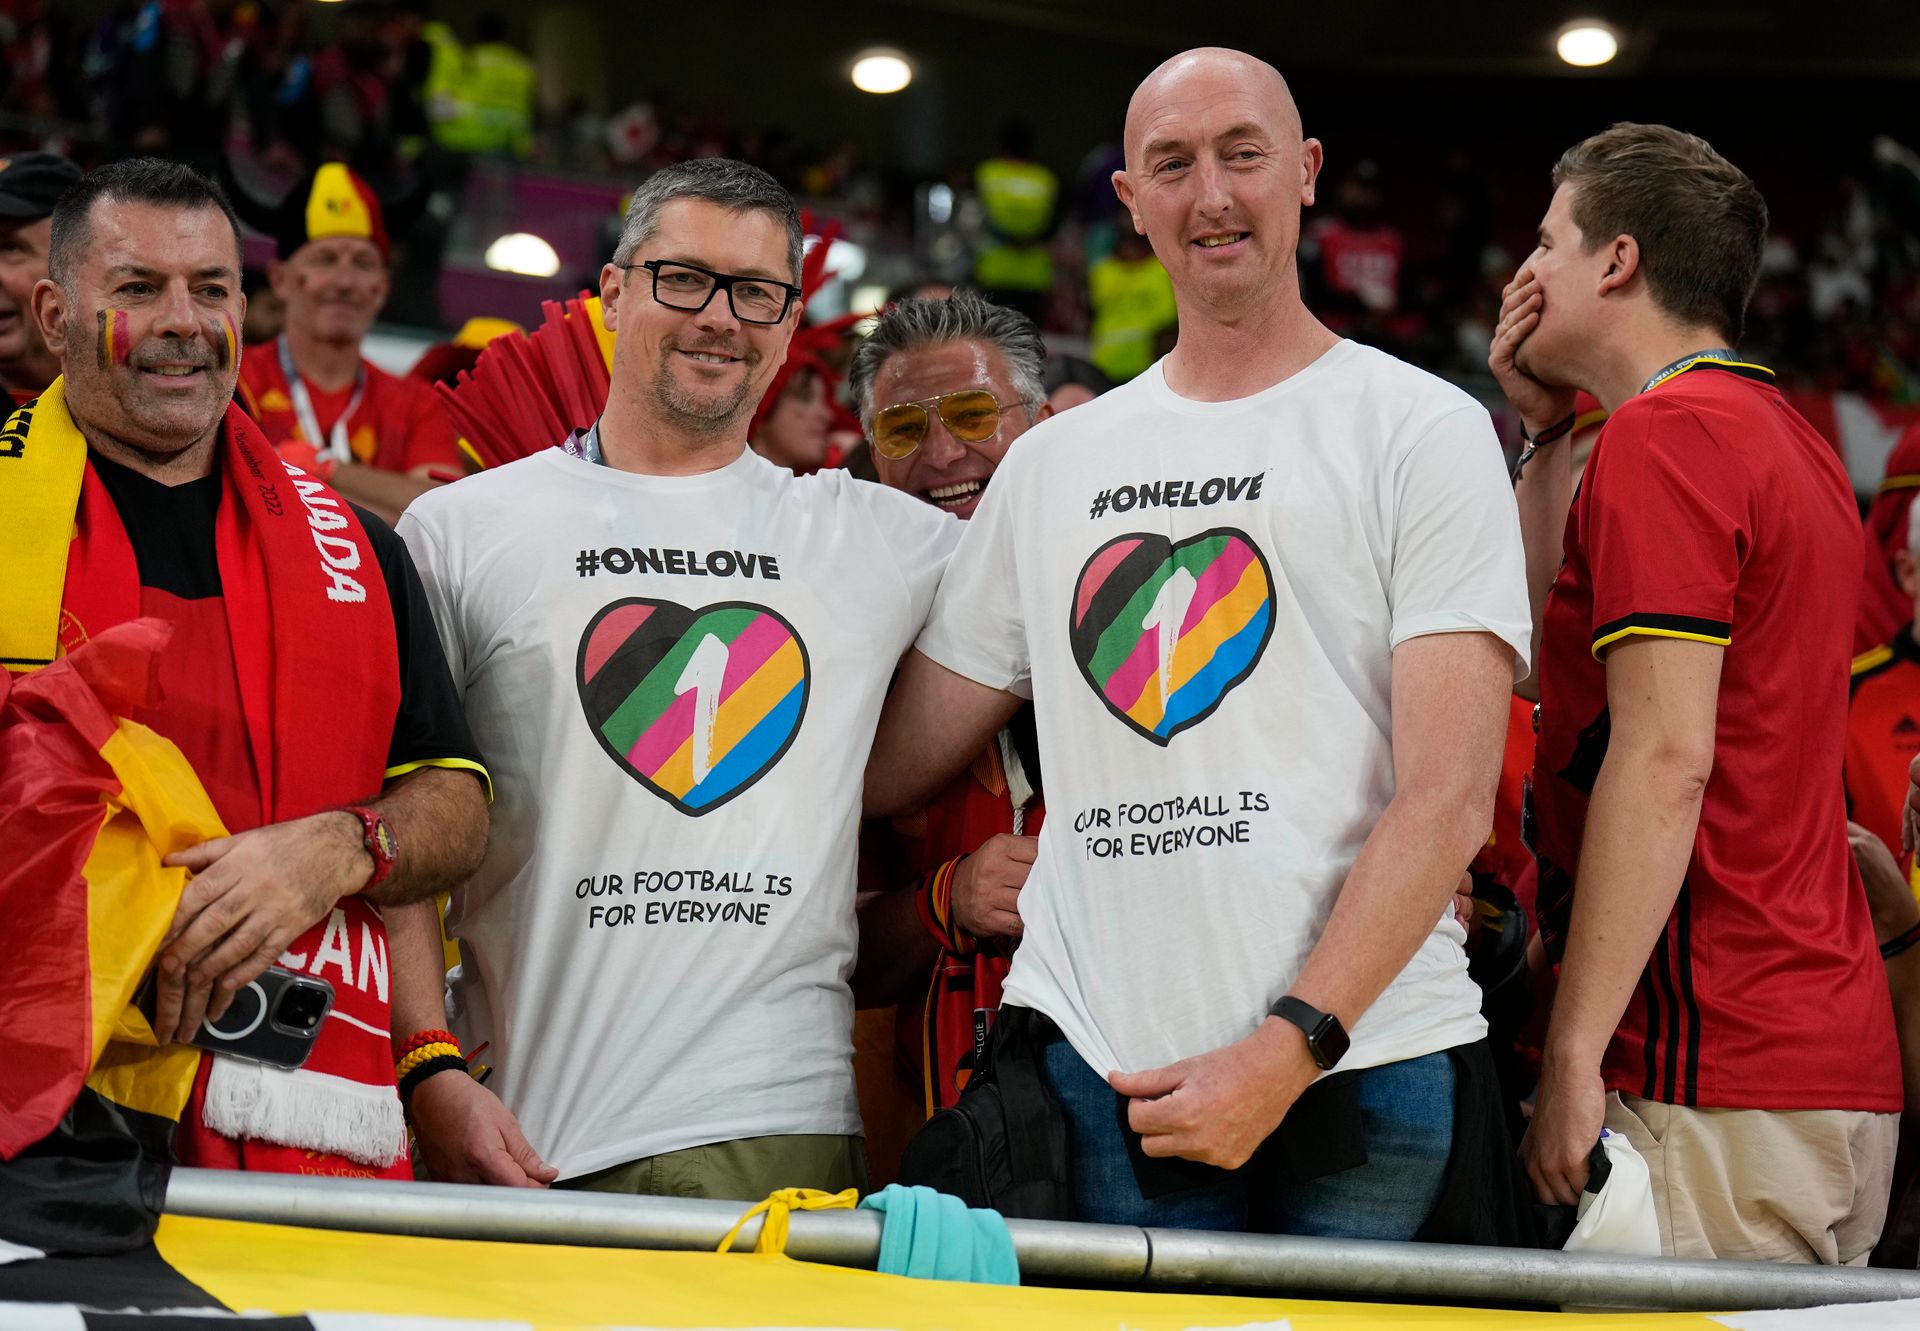 To menn står på en fotballtribune og smiler med hvite t-skjorter med regnbuefarger på.